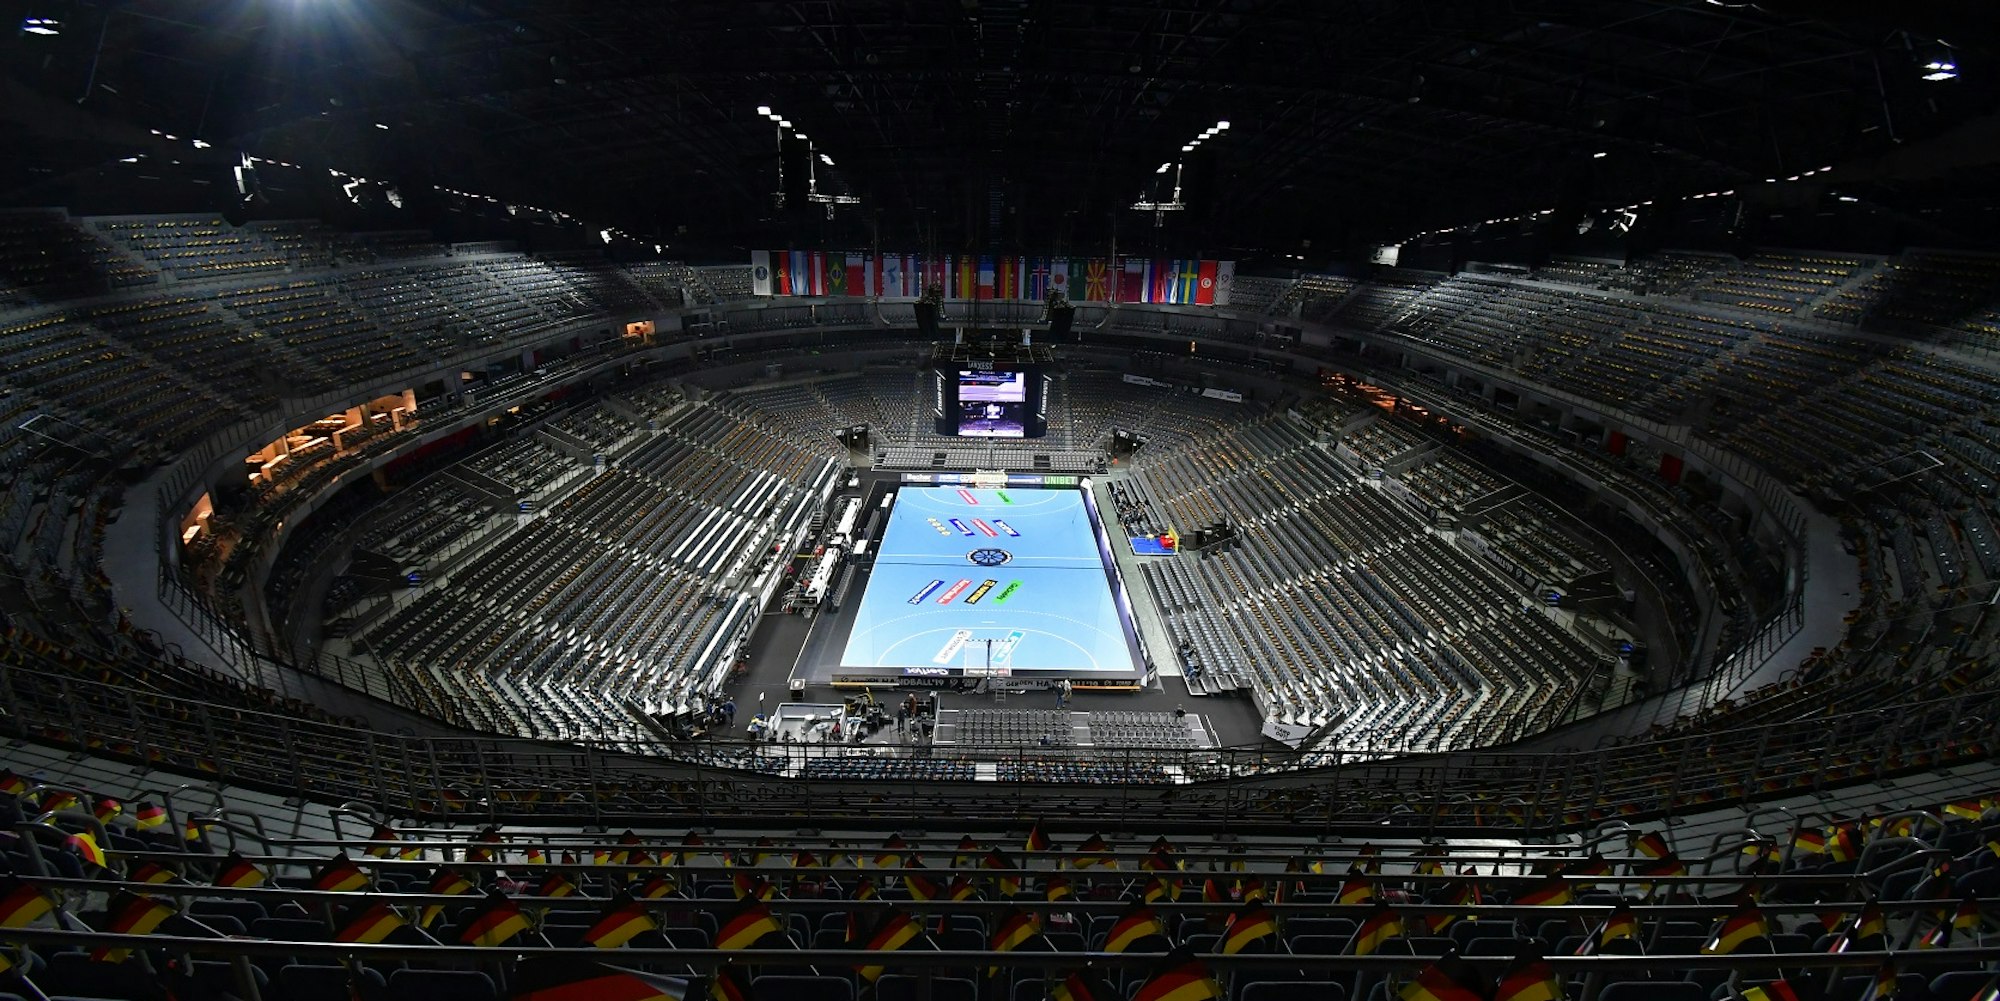 022 Koeln - Arena Overview